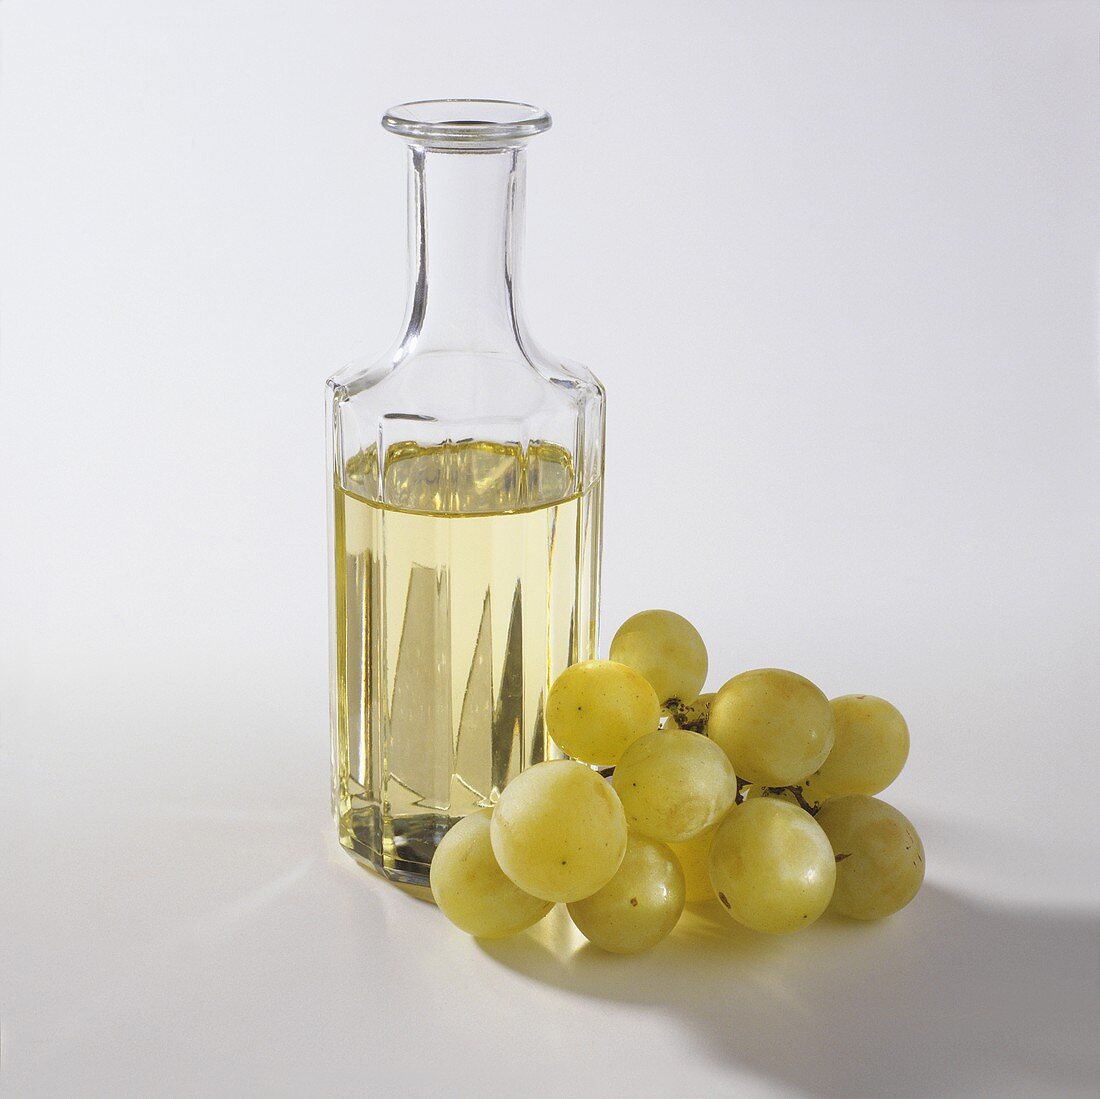 Grape seed oil in a glass bottle, grapes beside it